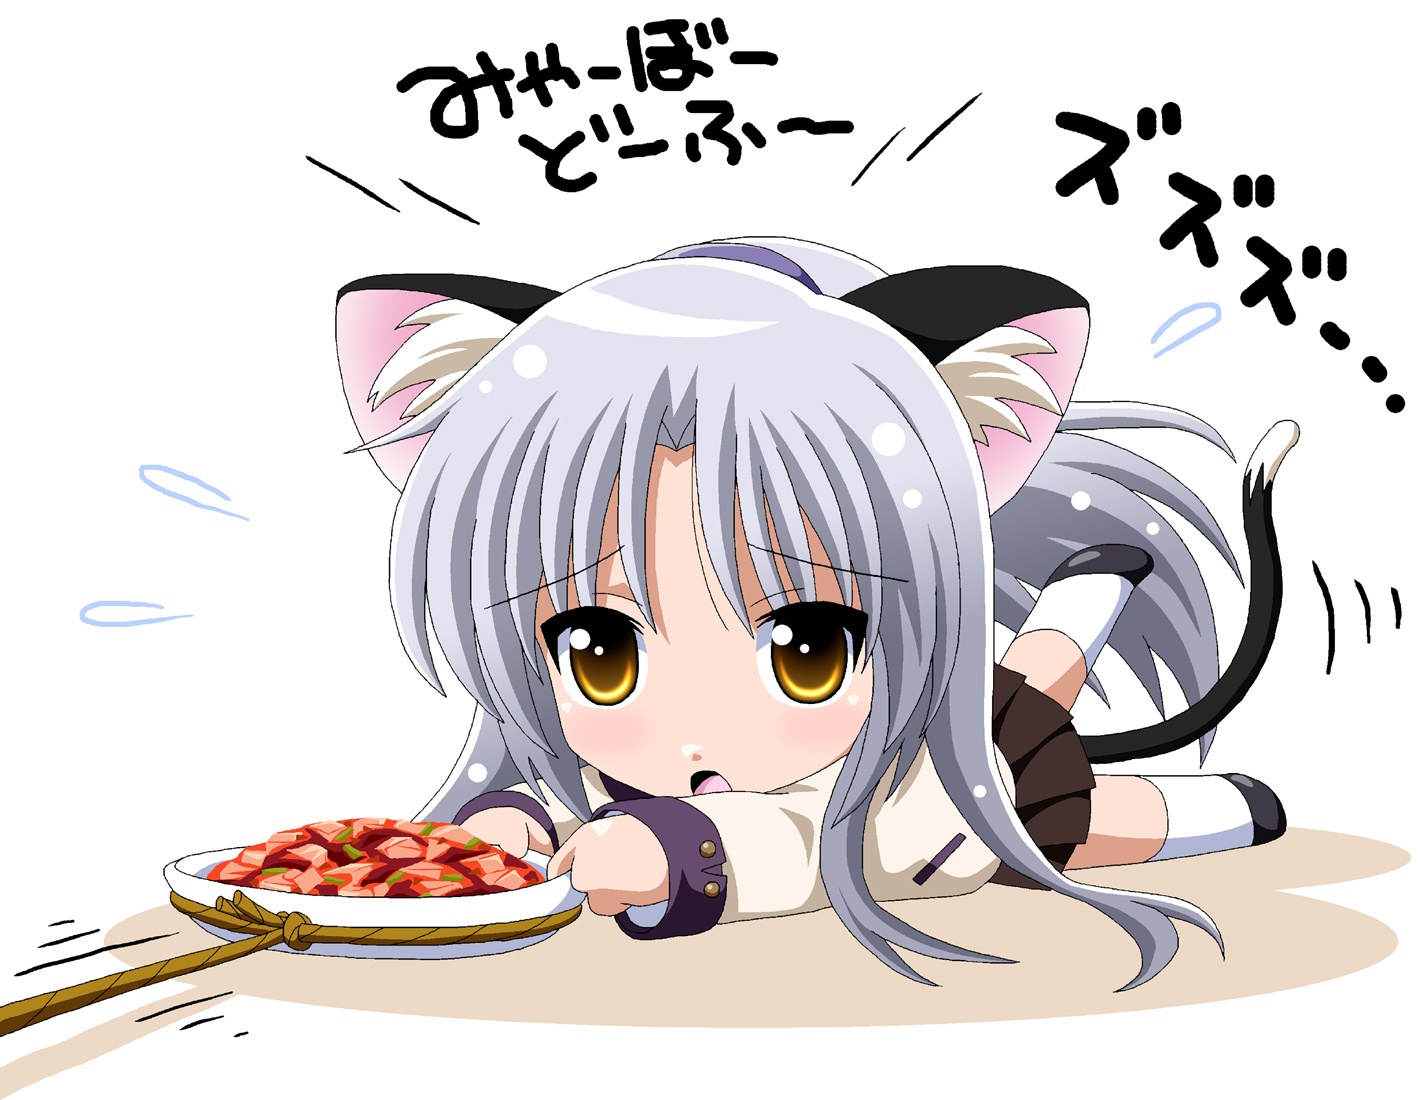 cat-girl-anime-31132938-1423-1100.jpg